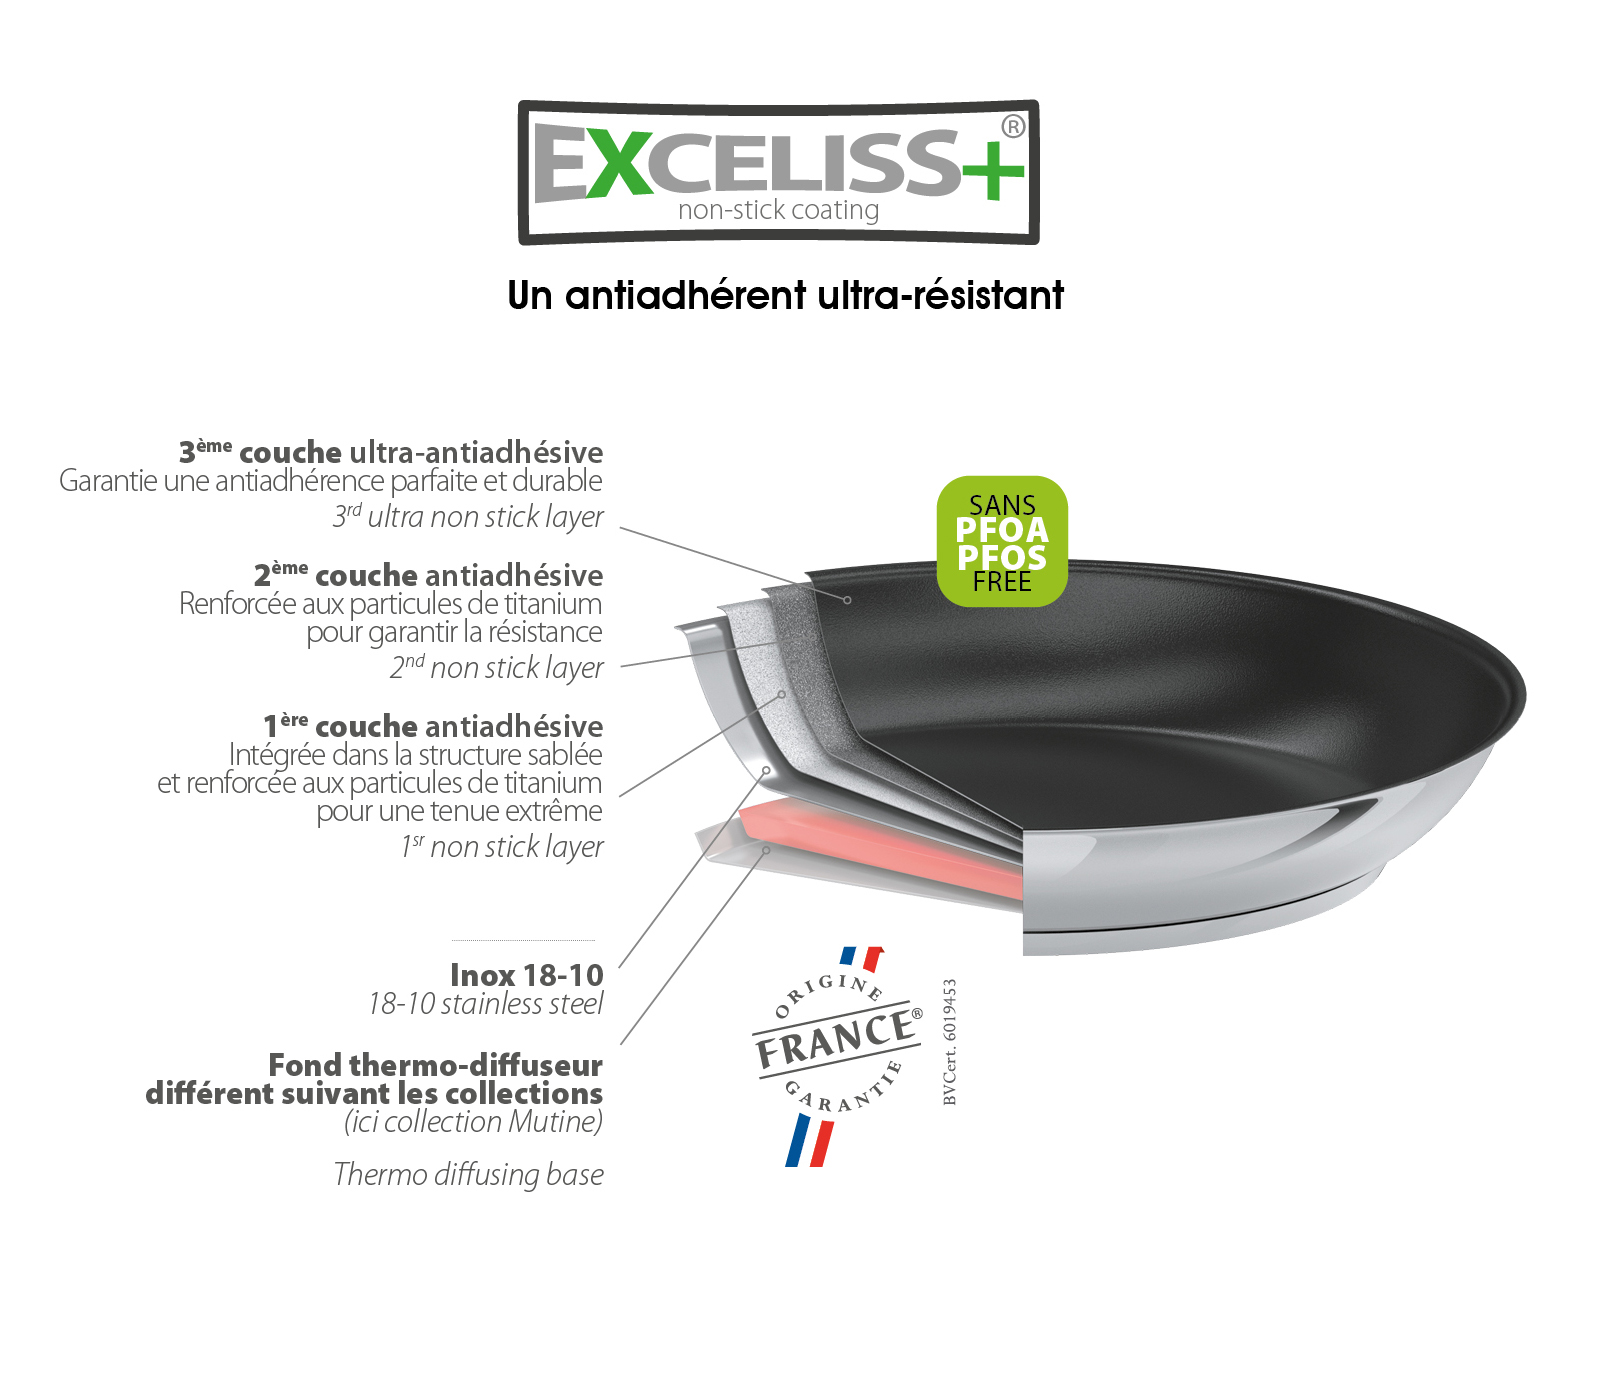 Exceliss+®, le revêtement anti-adhérent sélectionné pour ses qualités d'anti-adhérence et de résistance exceptionnelles